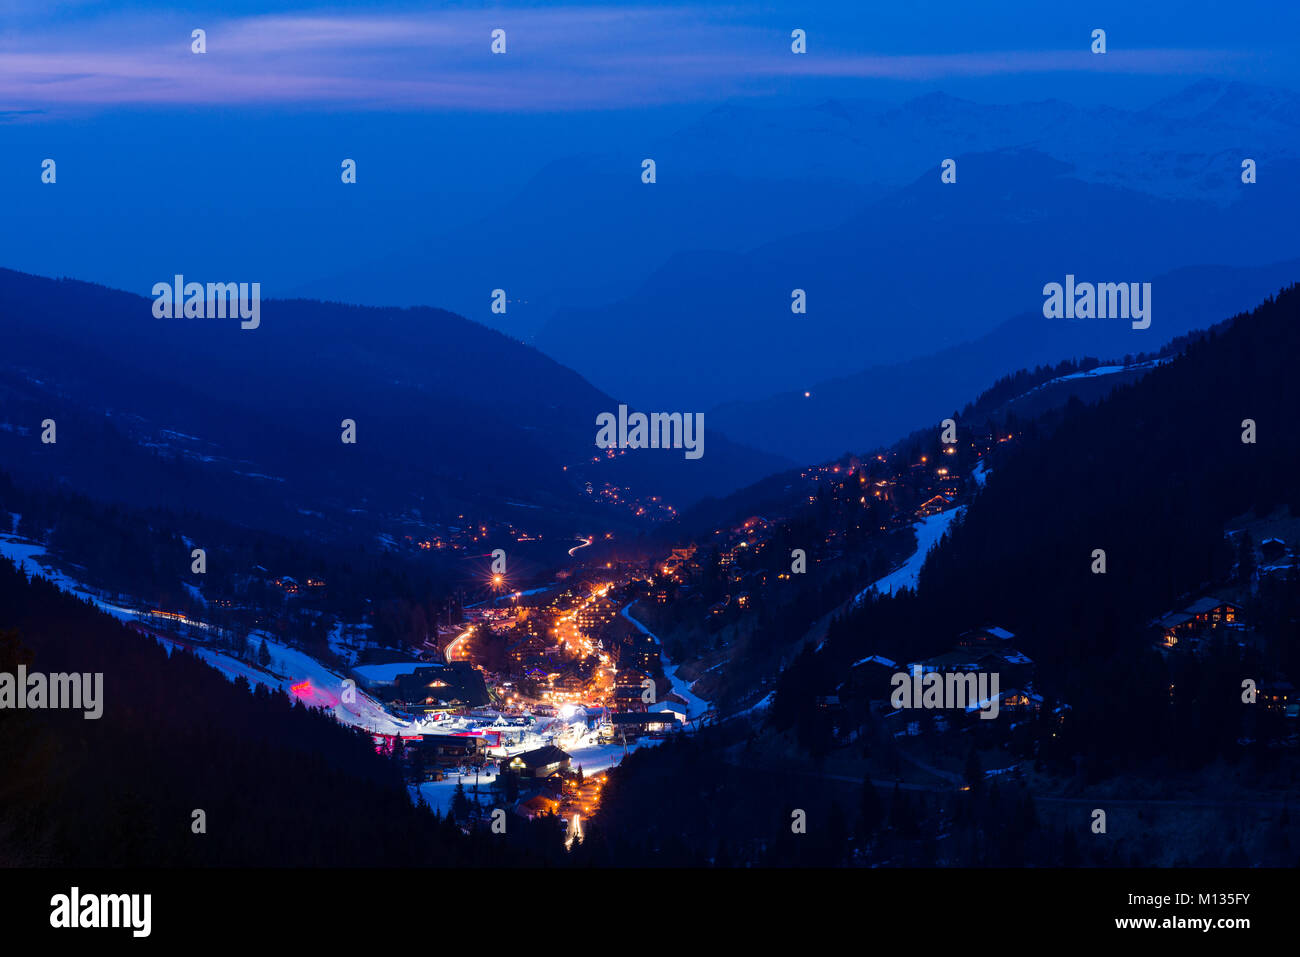 La ciudad resort de esquí Meribel y los 3 valles, zona montañosa al anochecer, Francia Foto de stock